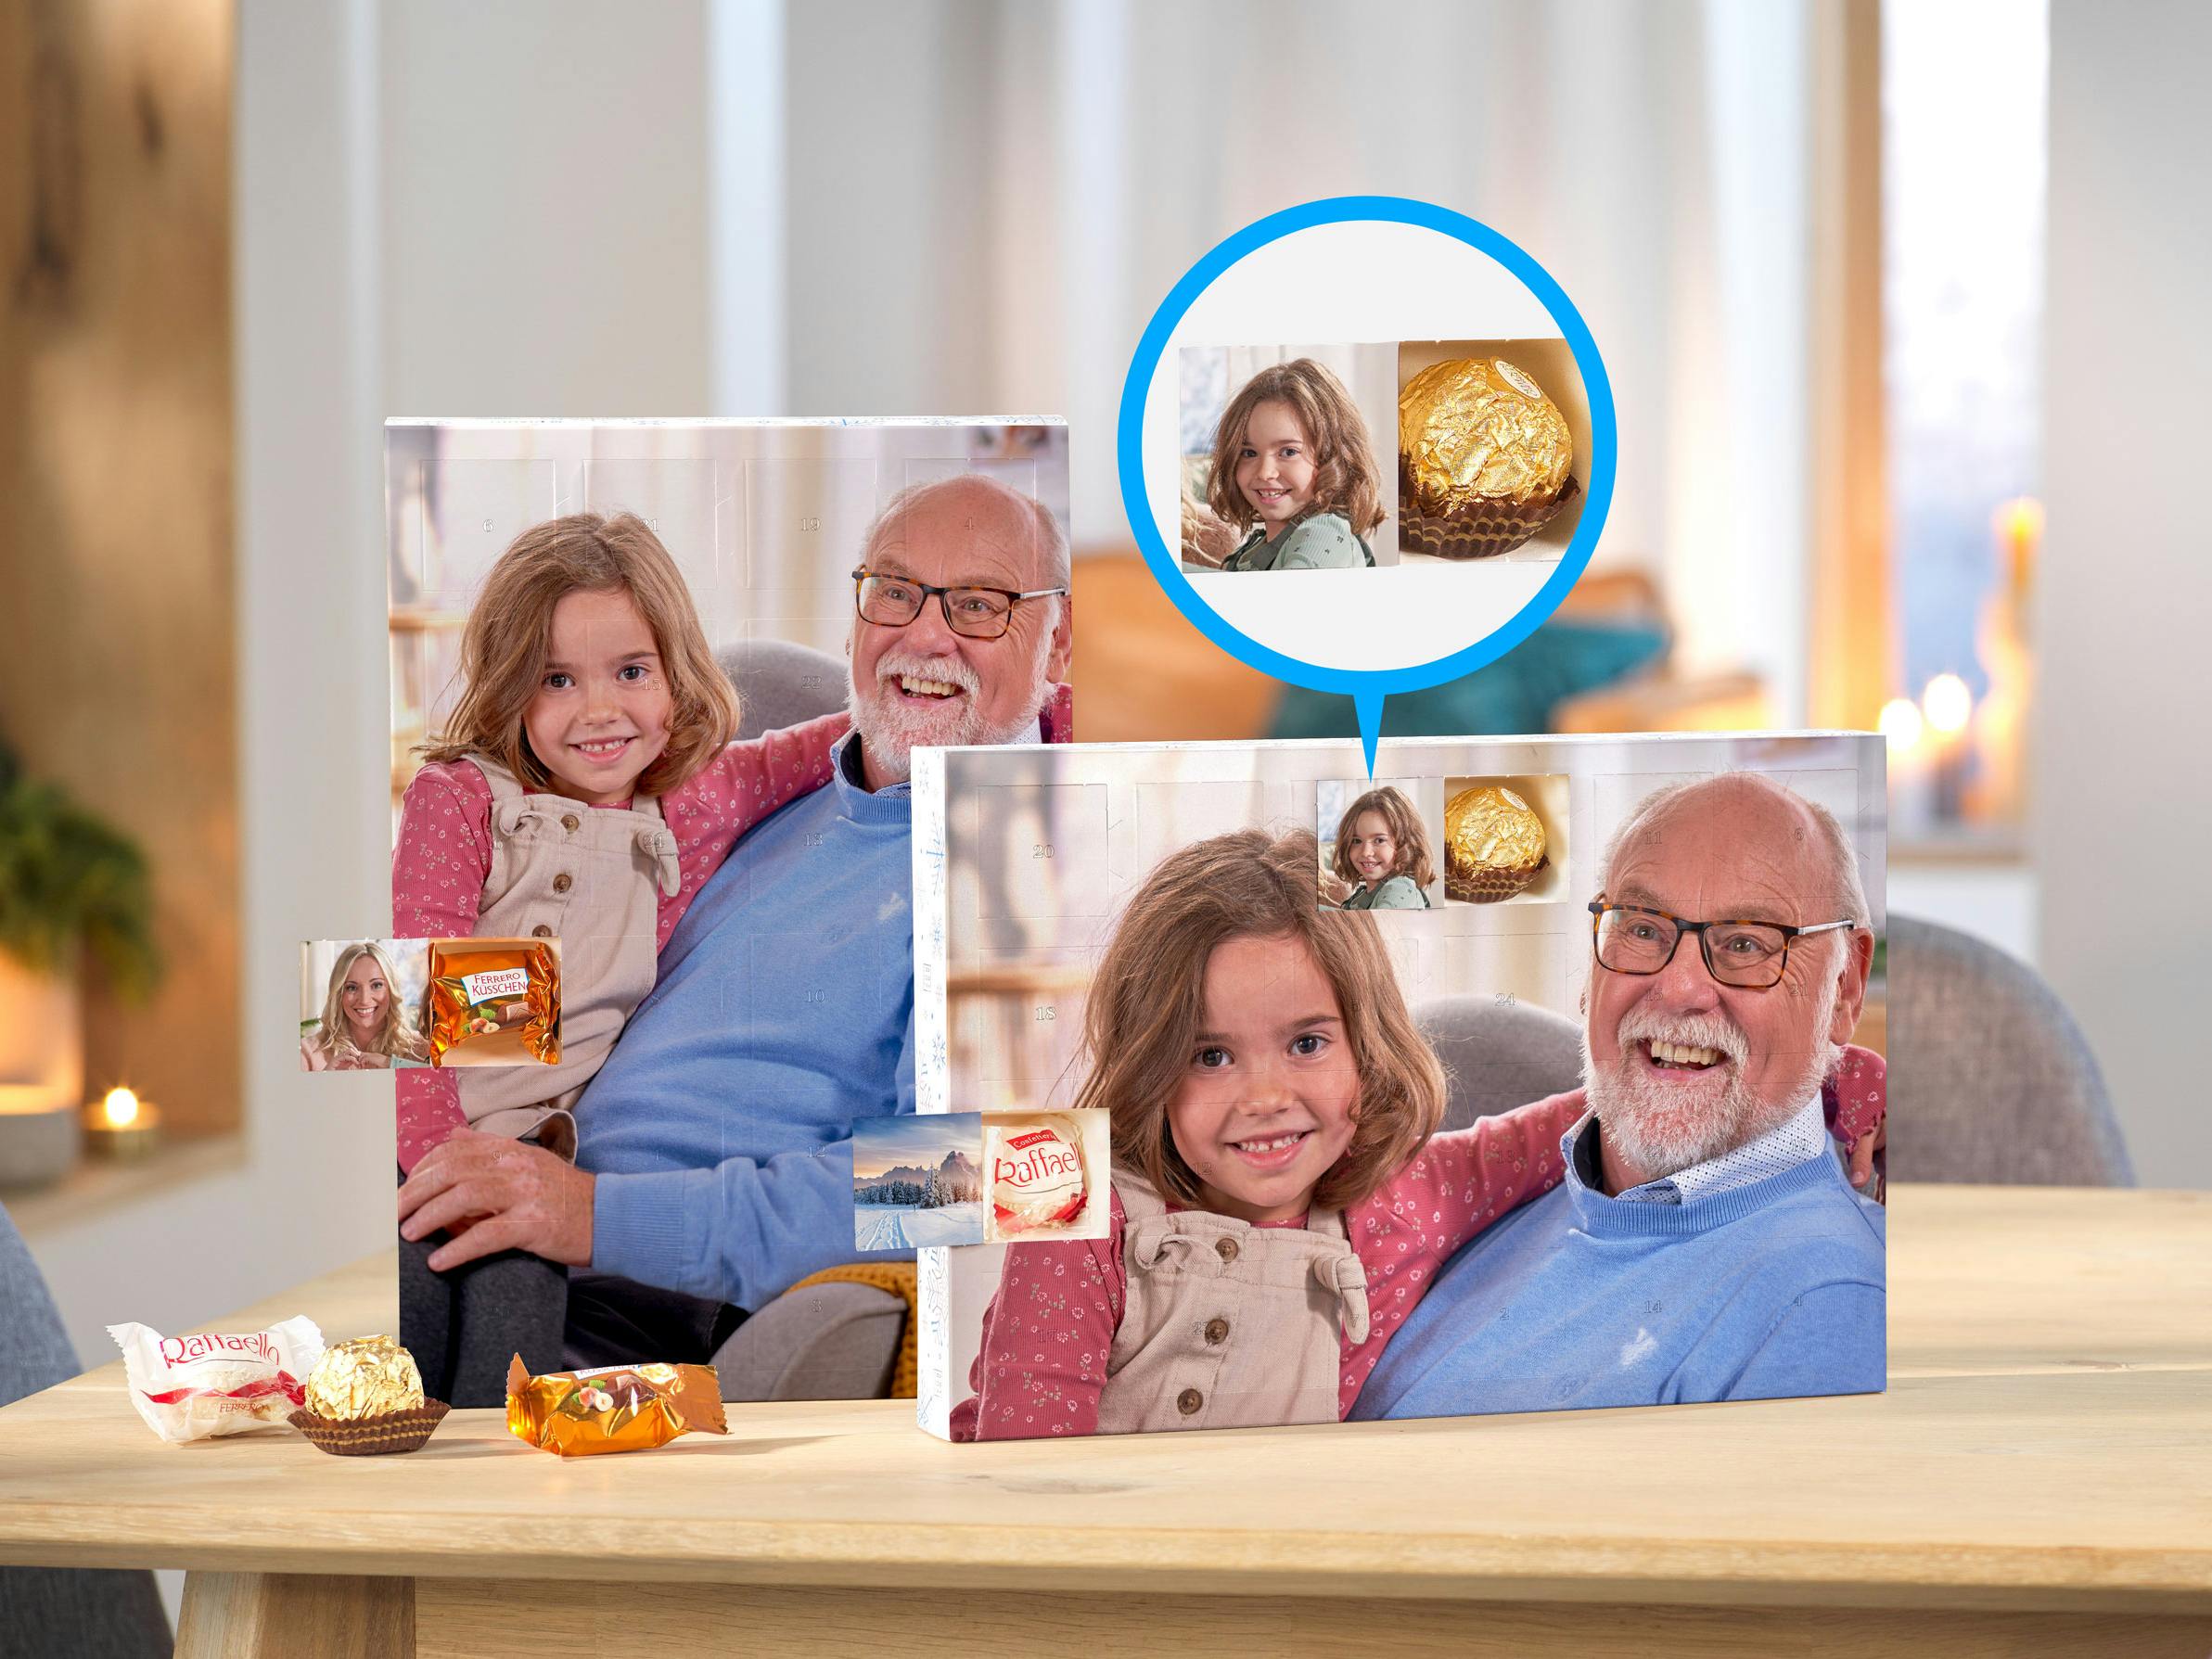 Calendario de Adviento personalizado con bombones Ferrero Rocher con celdas con fotos de un abuelo con su nieta